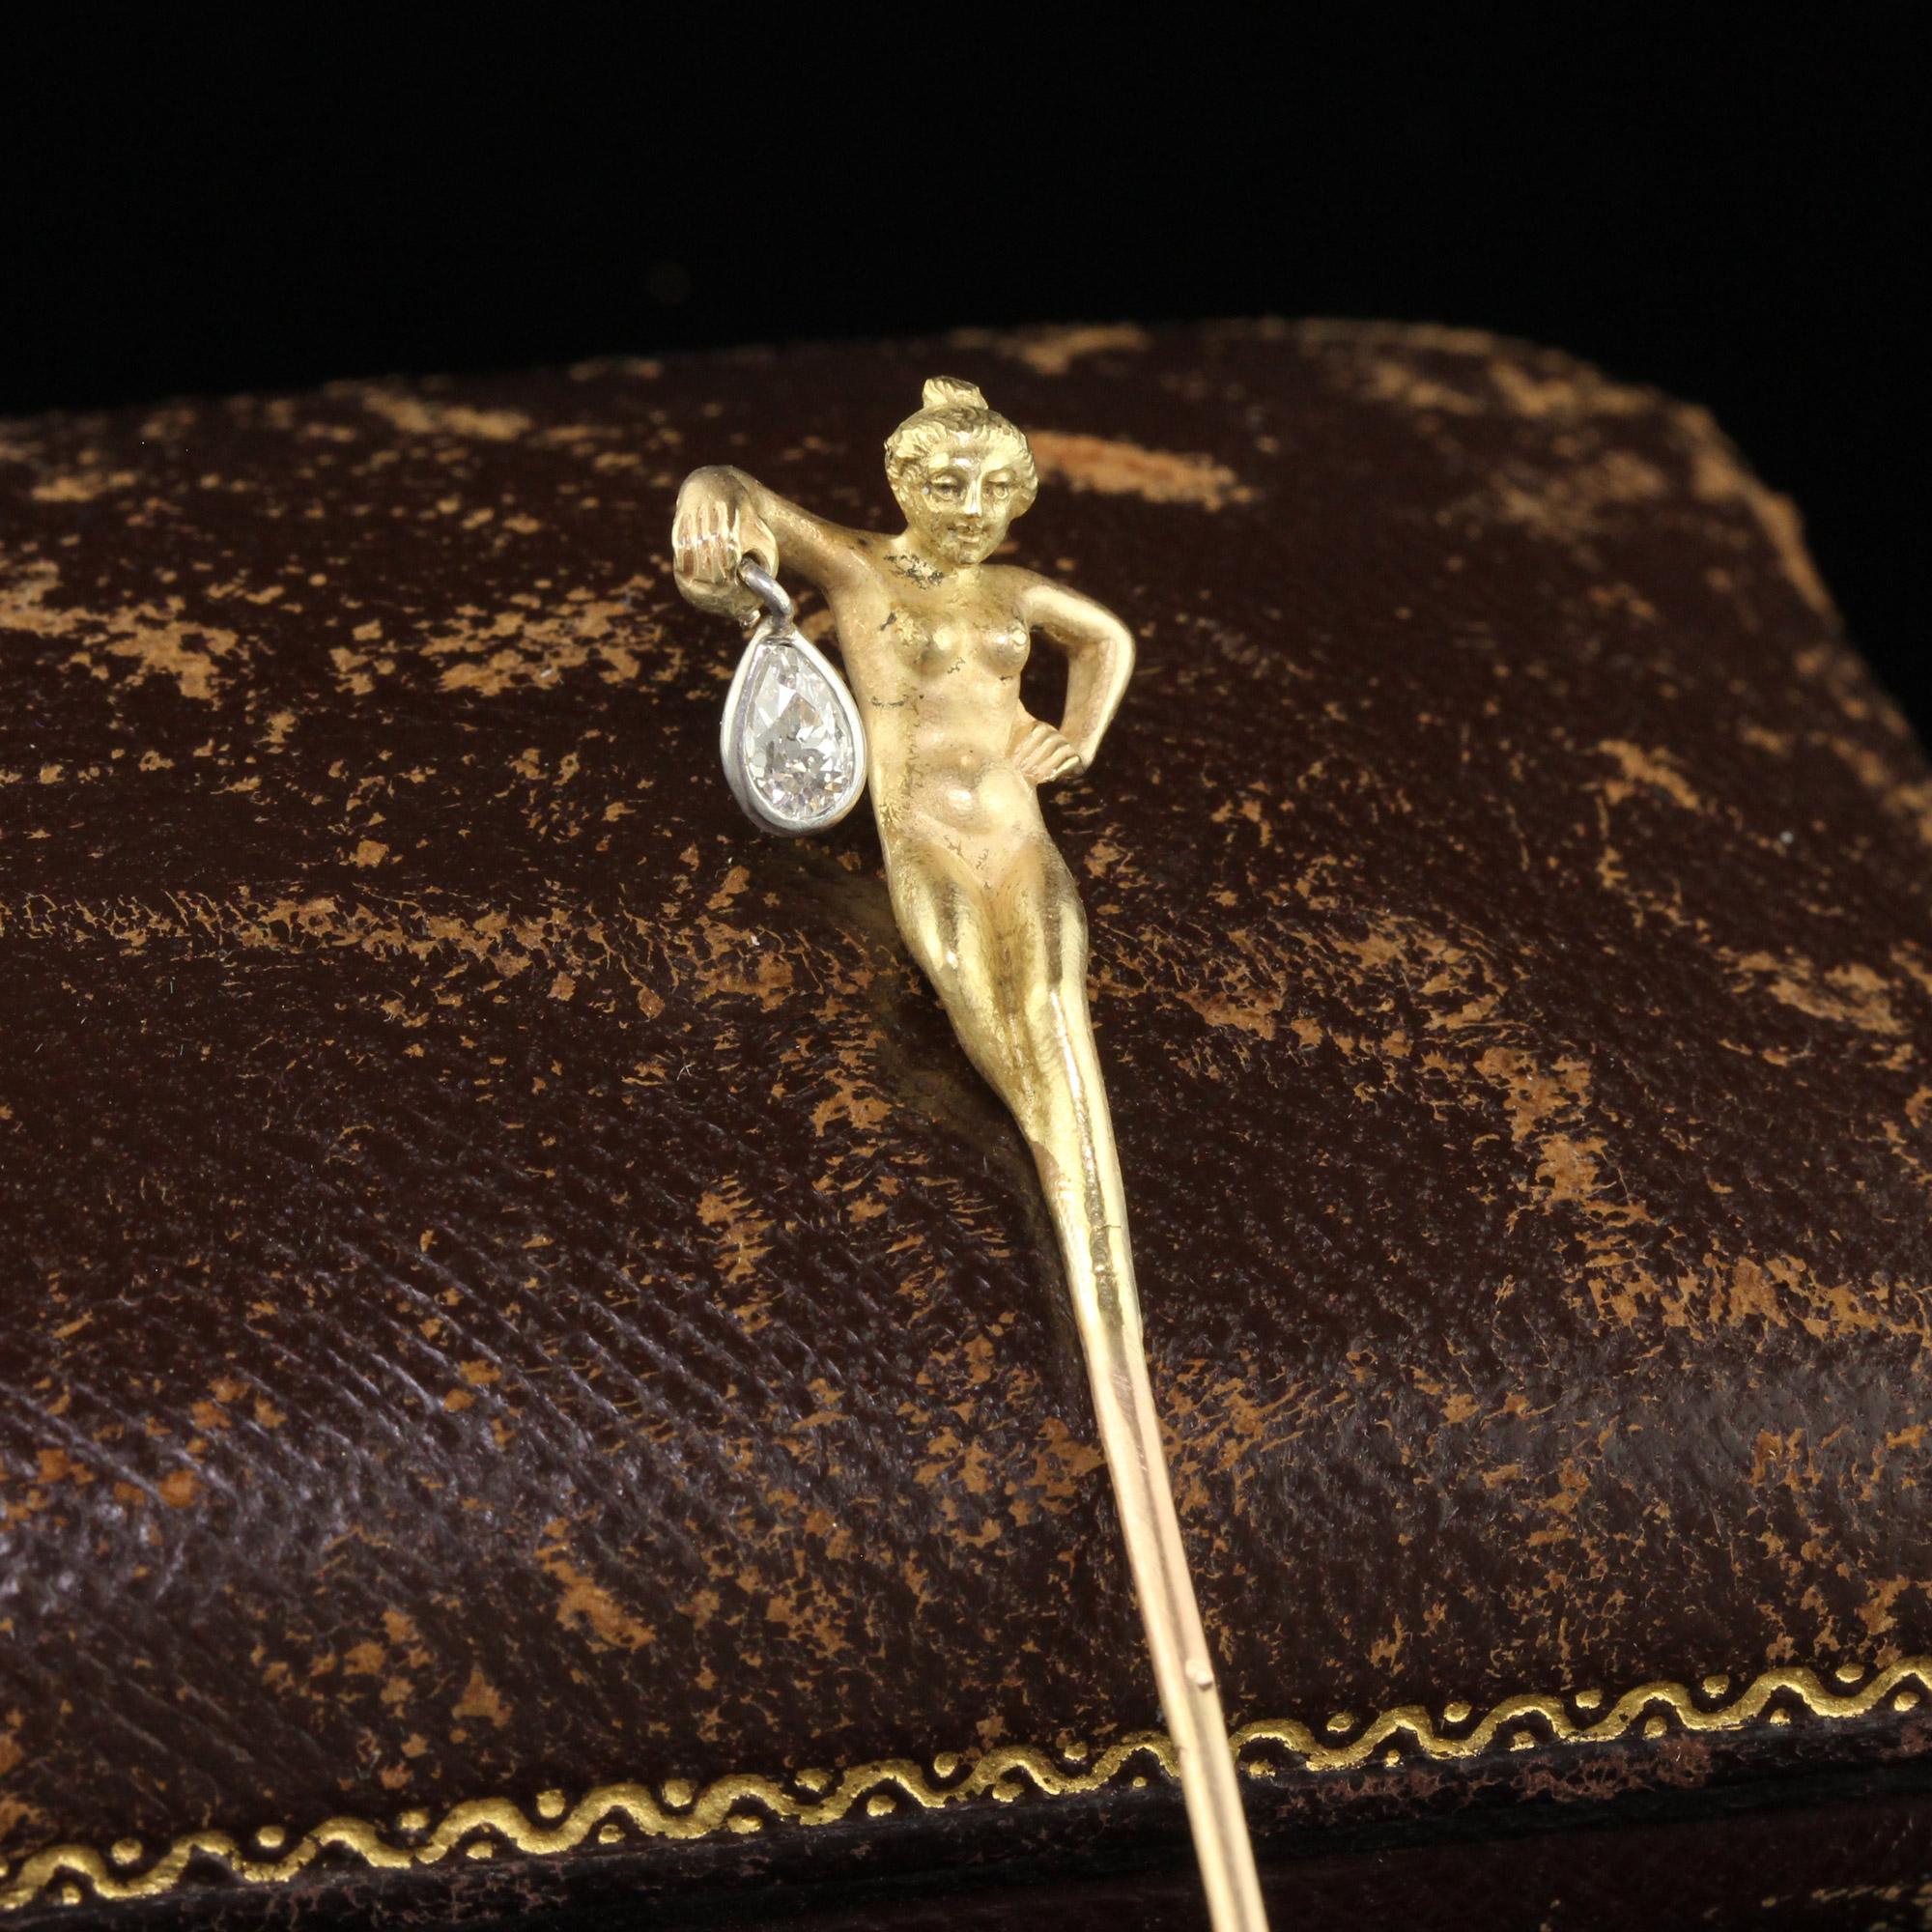 Schöne antike Art Nouveau Französisch 18K Gold Old Pear Diamond Lorette Frau Stick Pin. Diese unglaubliche Anstecknadel ist aus 18k Gelbgold gefertigt. Die Brosche zeigt eine unbekleidete Frau, die eine Laterne in der Hand hält, bei der es sich um